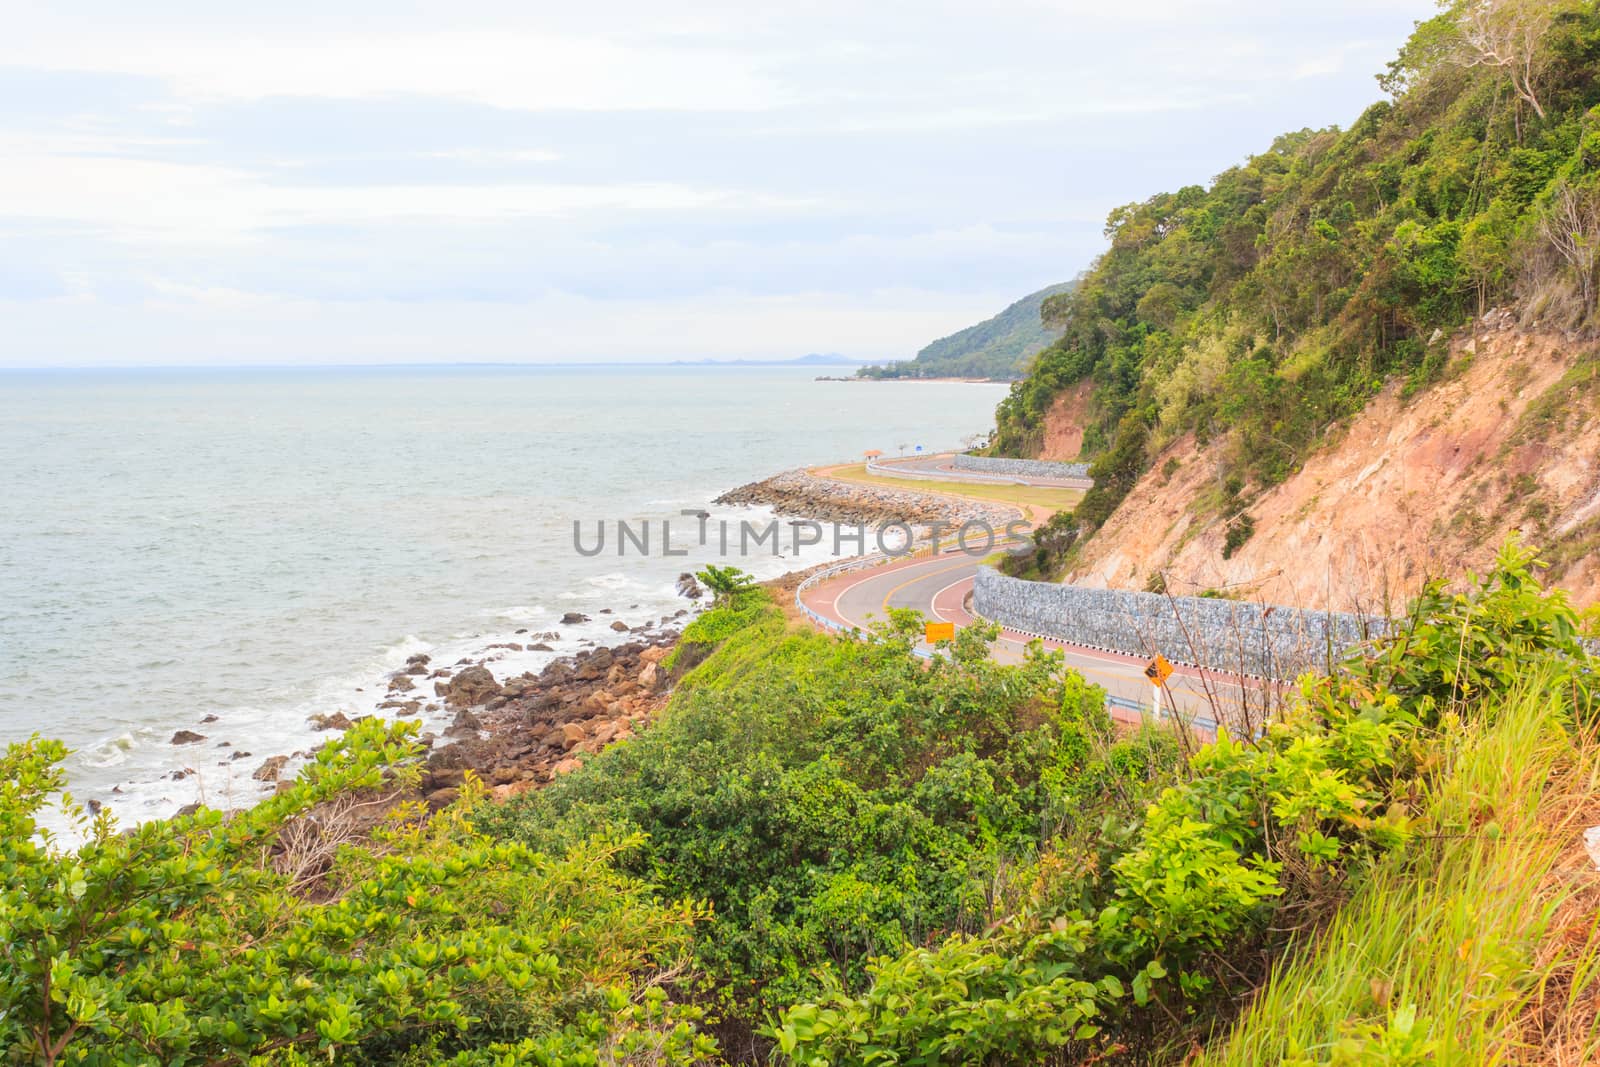 Coastal road sea at Khung Viman bay, Chanthaburi, Thailand